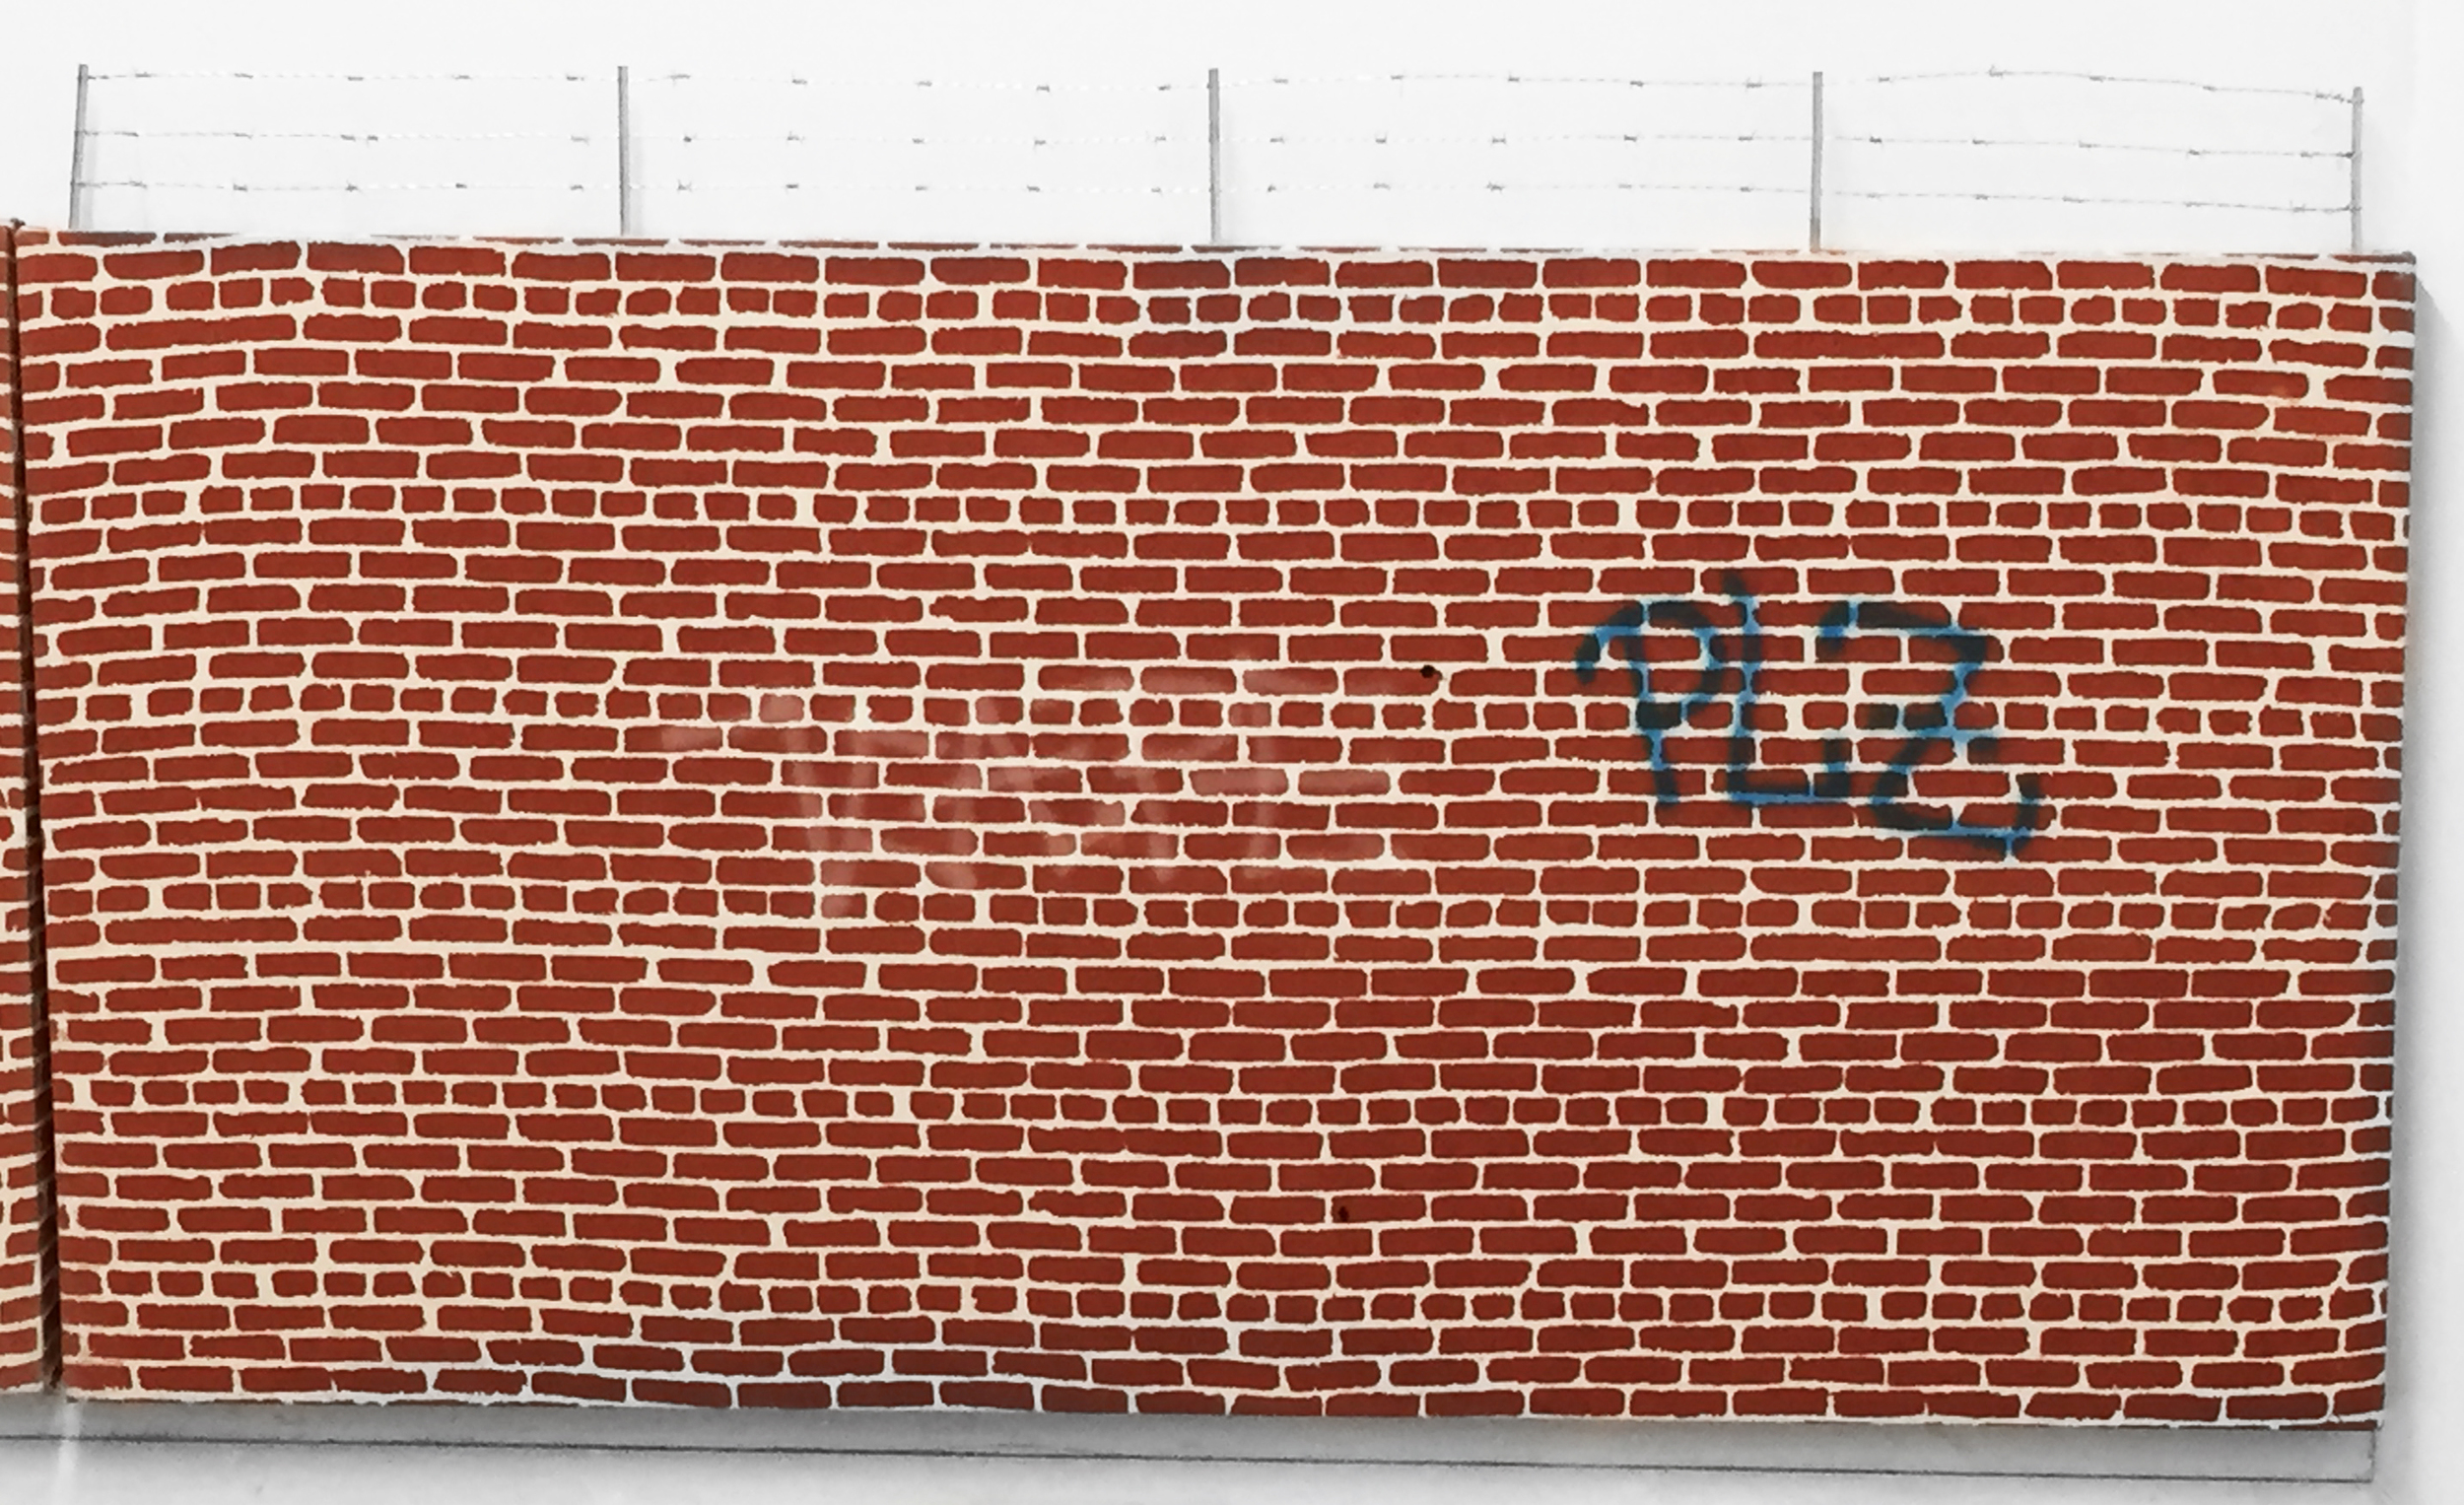  Pentti Monkkonen,&nbsp; Brick Wall (PLZ) , 2014,&nbsp;acrylic, aluminum, steel on canvas,&nbsp;26 x 44 in 